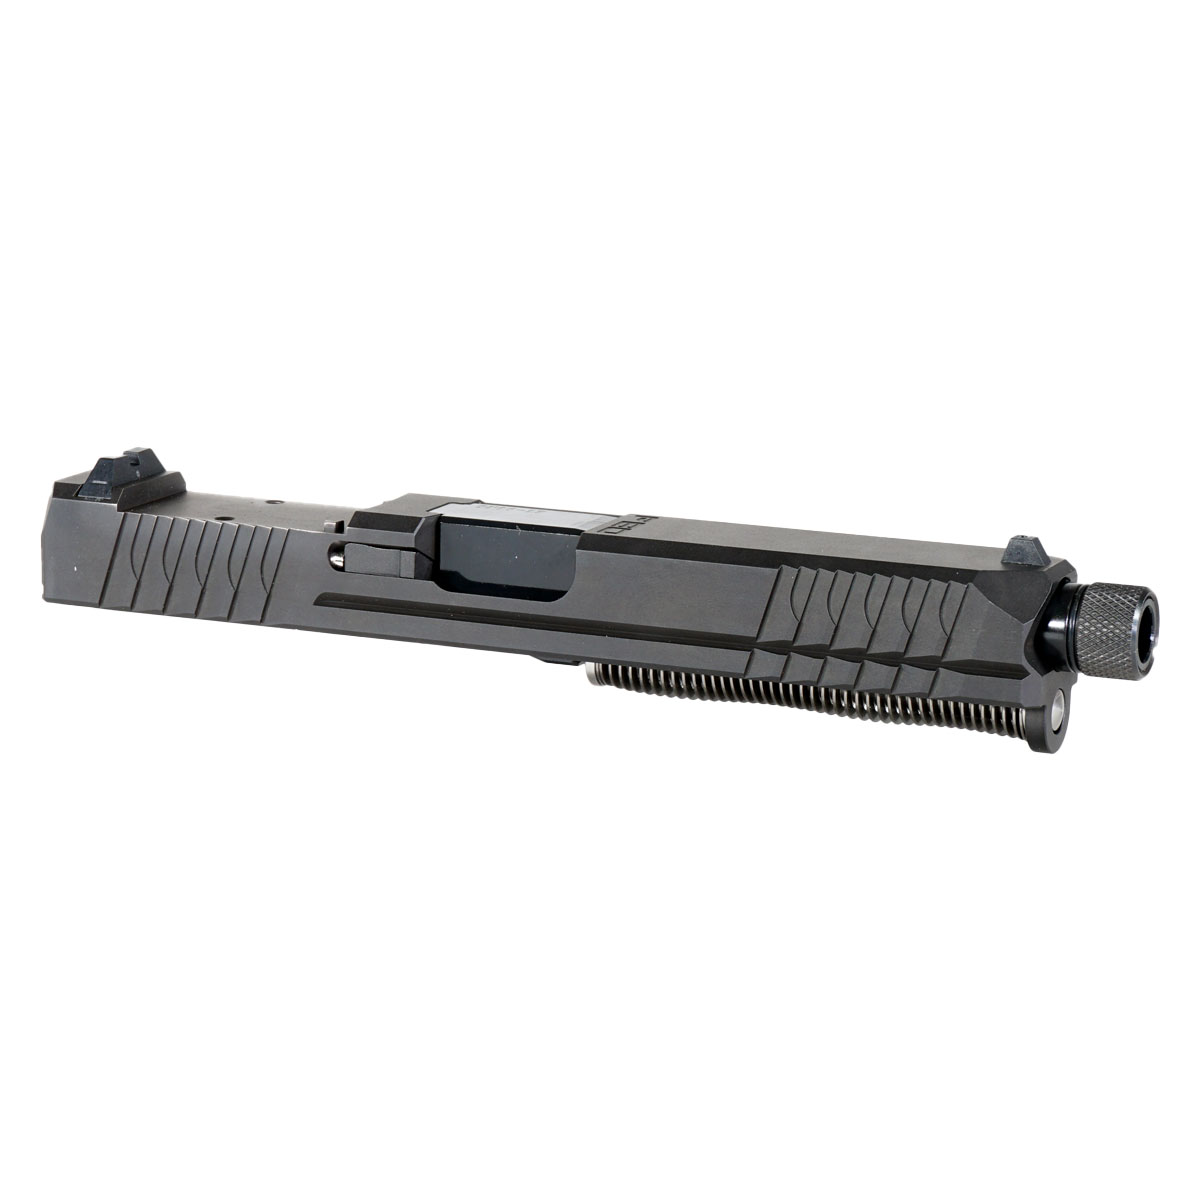 MMC 'Obsidian Blade' 9mm Complete Slide Kit - Glock 17 Gen 1-3 Compatible